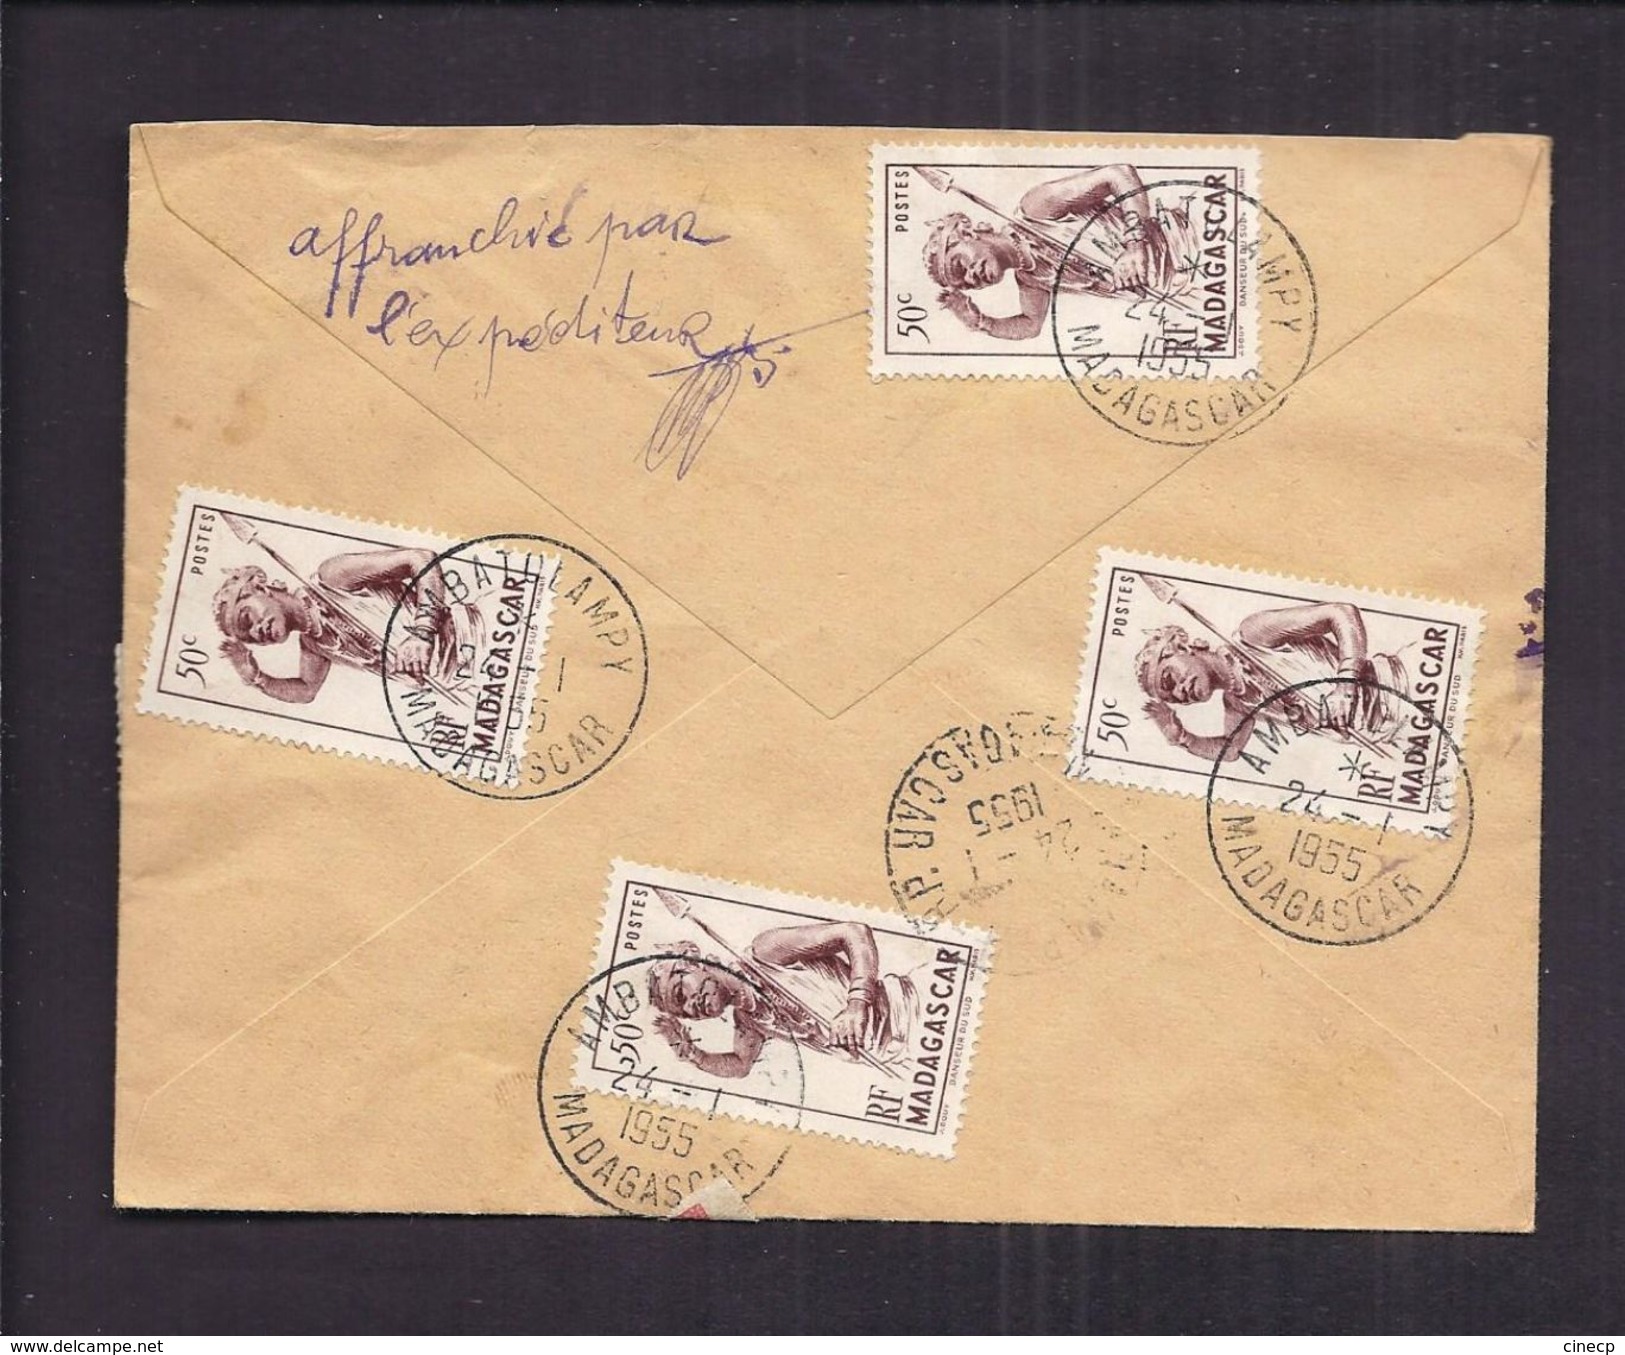 ENVELOPPE MADAGASCAR 1955 Recommandé AMBATOLAMPY Timbres 1,5F 8F 7,5F 50c - Briefe U. Dokumente